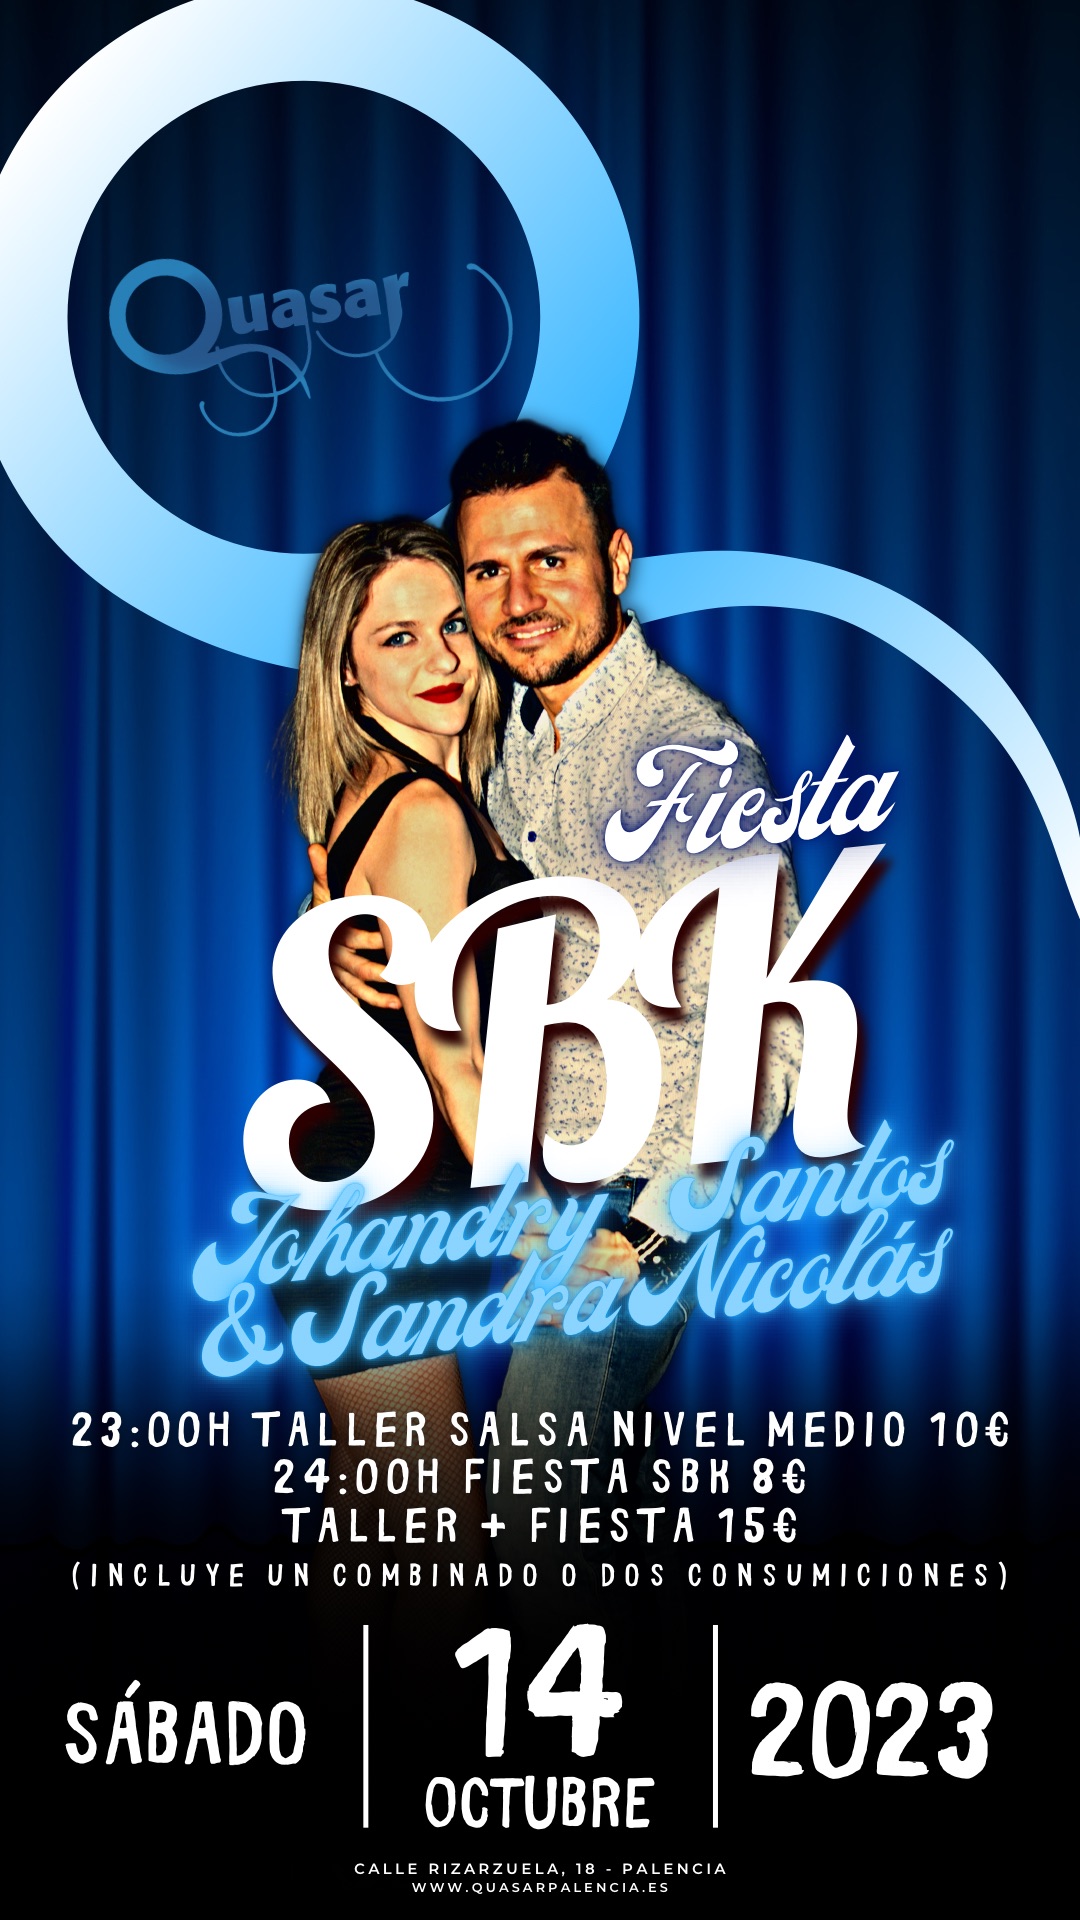 Taller-Fiesta SBK con Johandry Santos & Sandra Nicolás